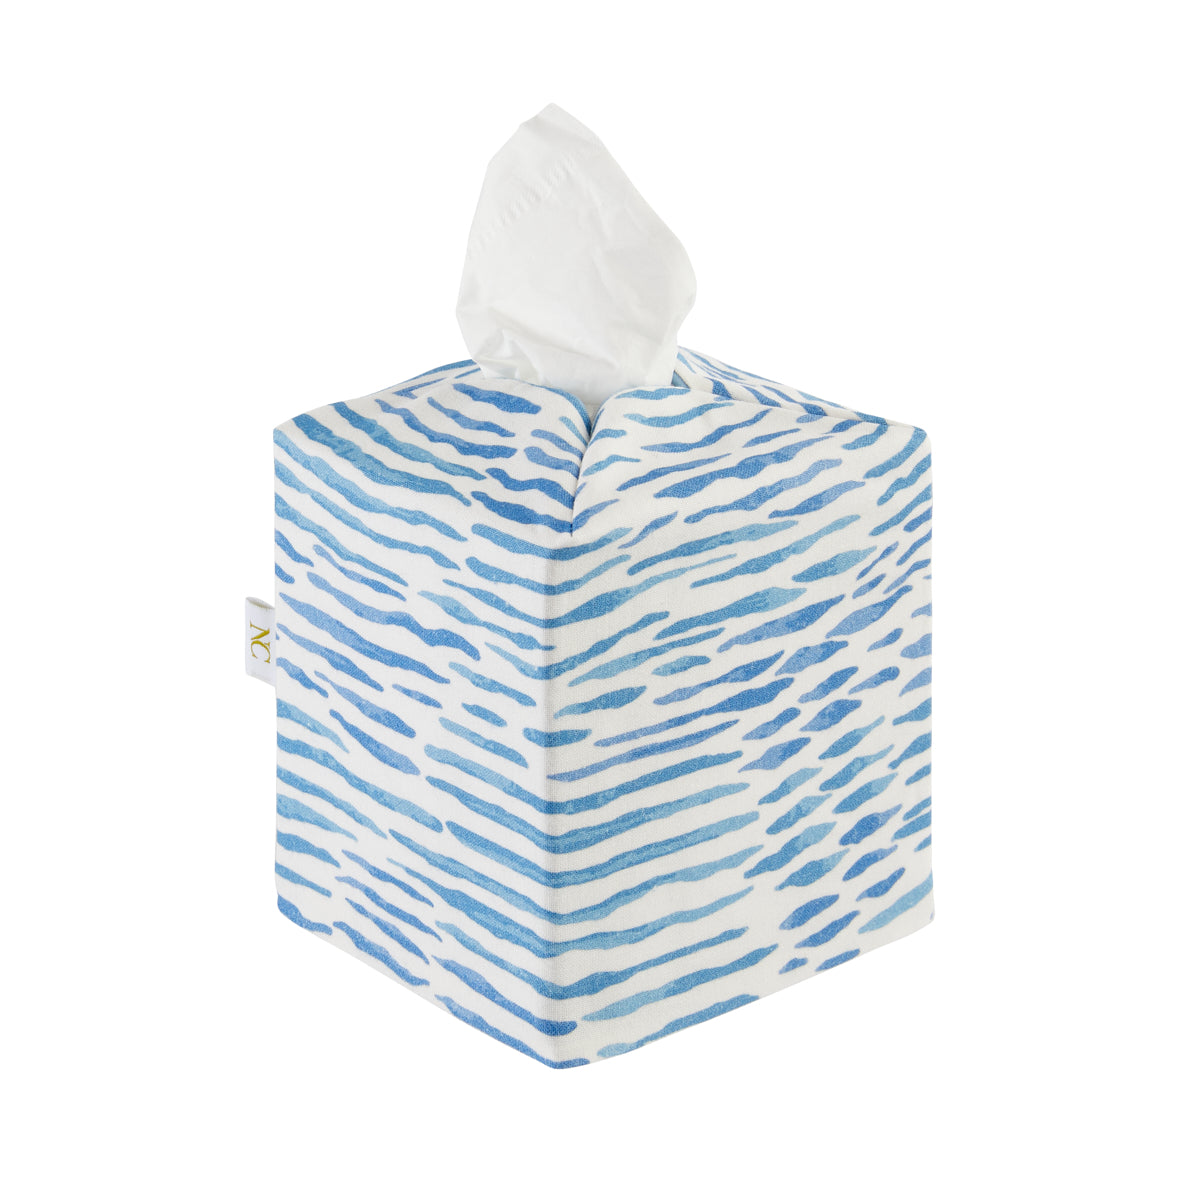 Tissue Box Cover - Arles Blue